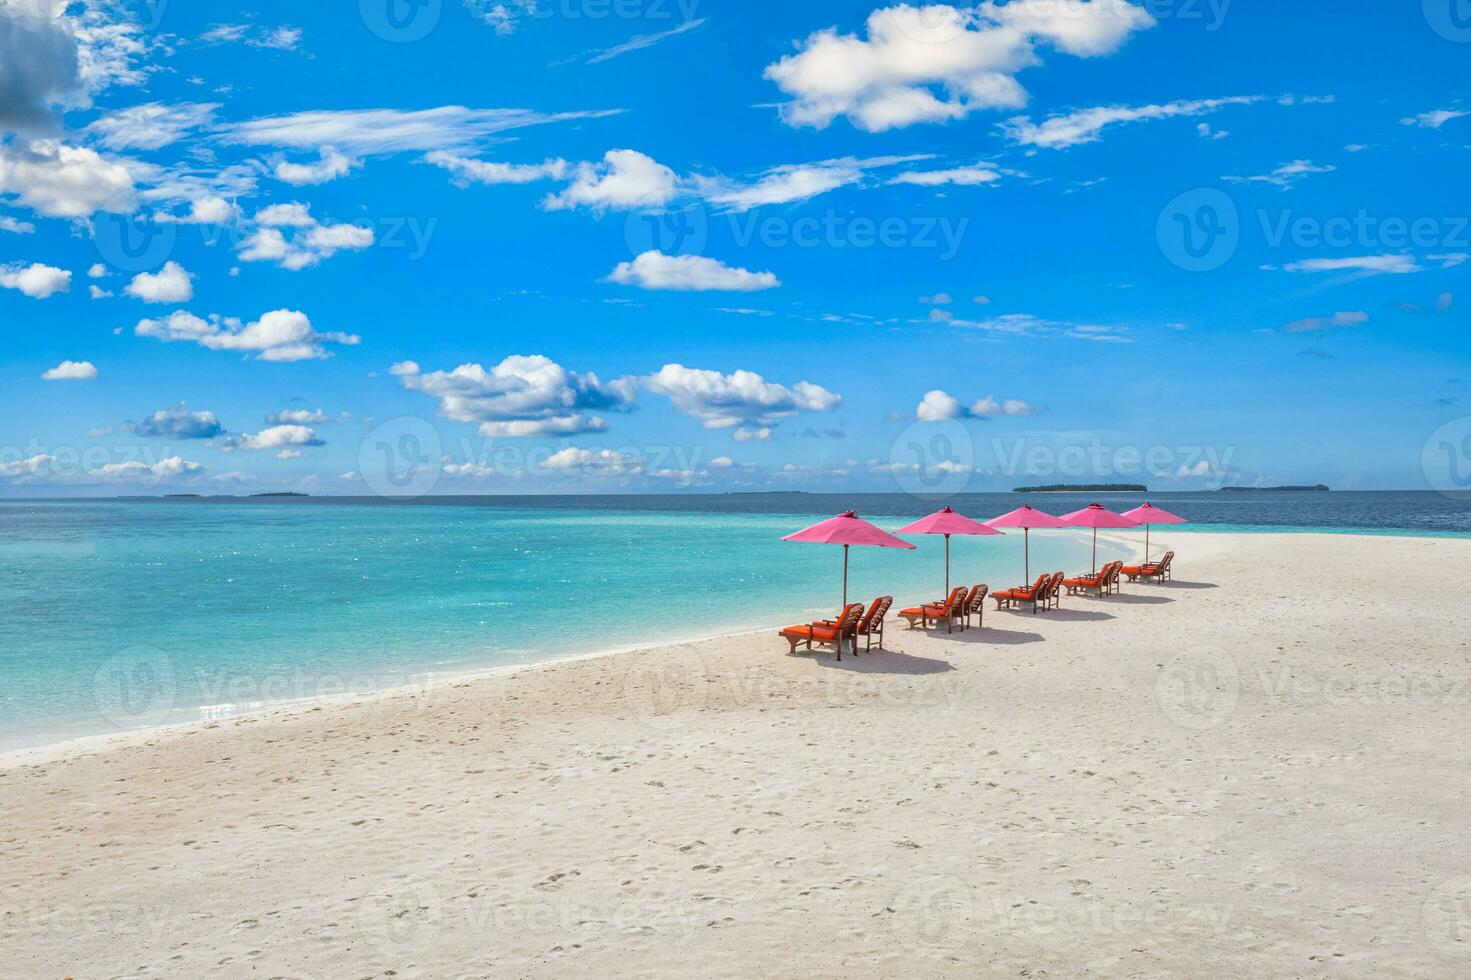 incroyable ciel de sable de mer tranquille. tourisme récréatif d'été. vue aérienne du paysage avec chaises et parasols sur la plage de l'île paradisiaque, bord de mer. vacances en villégiature, nature exotique. beaux tropiques photo